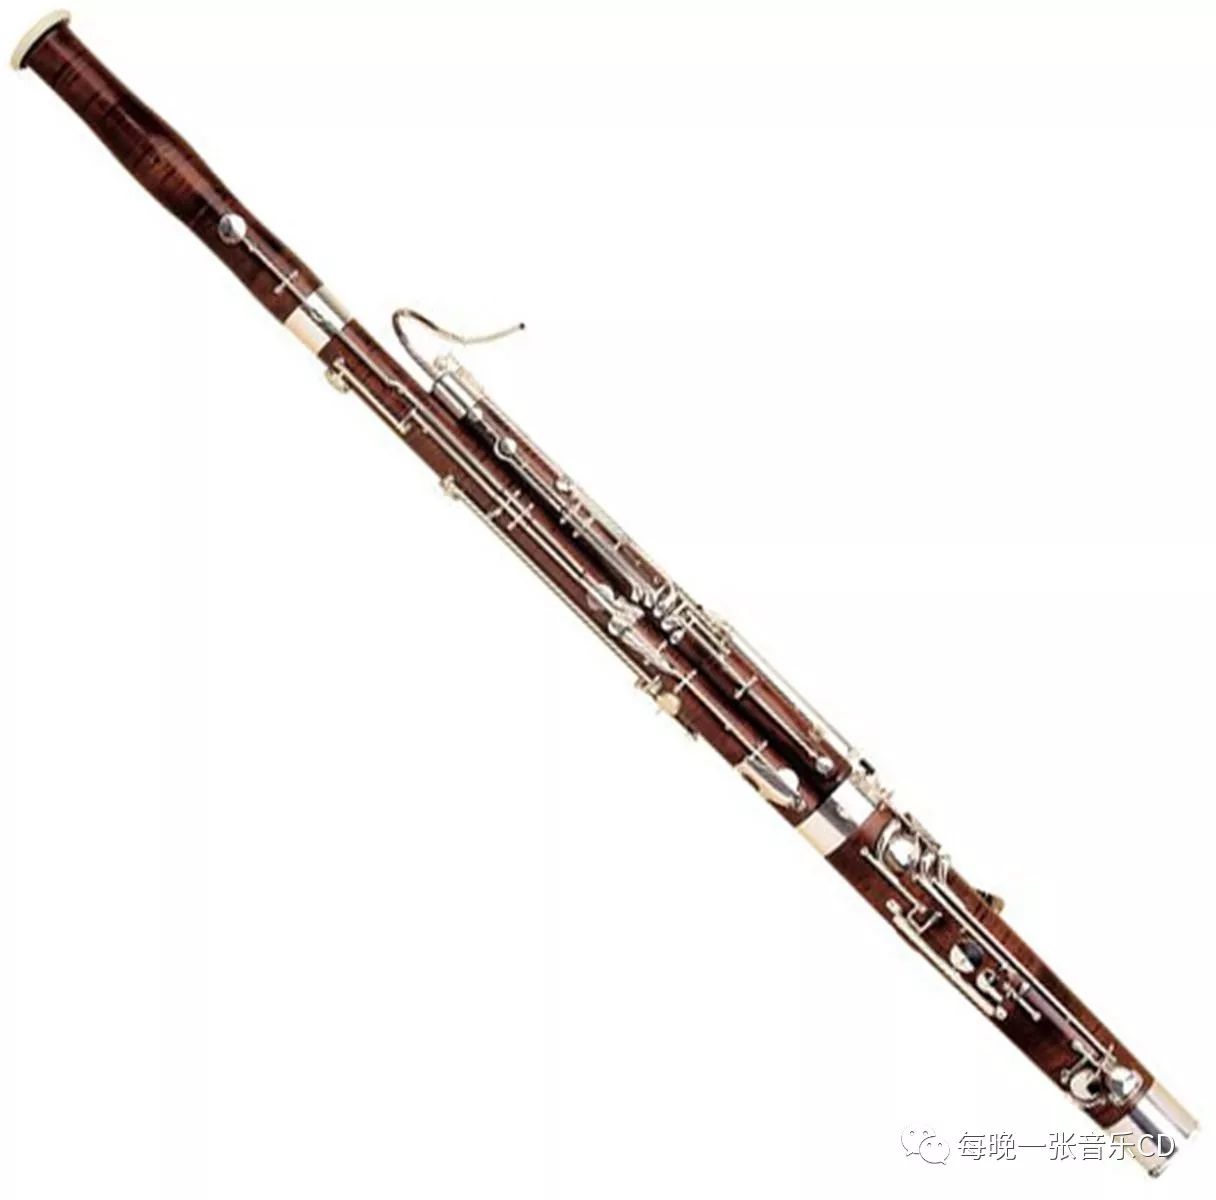 大管(低音管)这项乐器具有宽广的音域,无论在强而有力的低音或是丰富